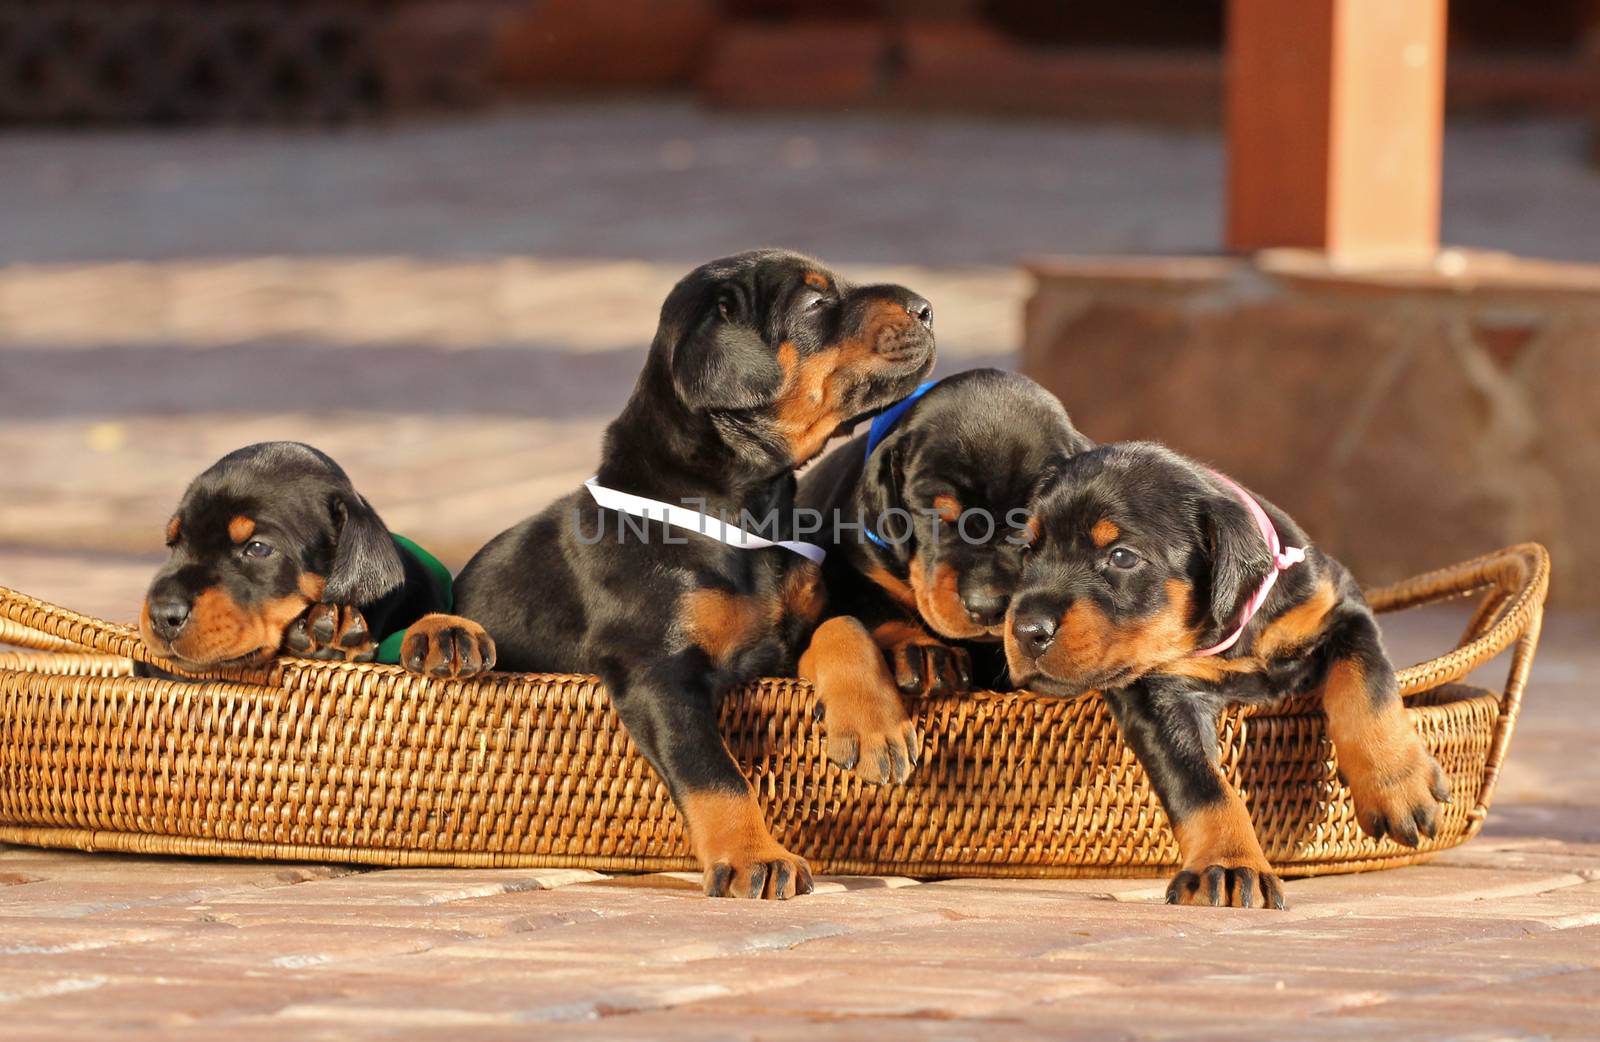 4 doberman puppies in basket, outdoors